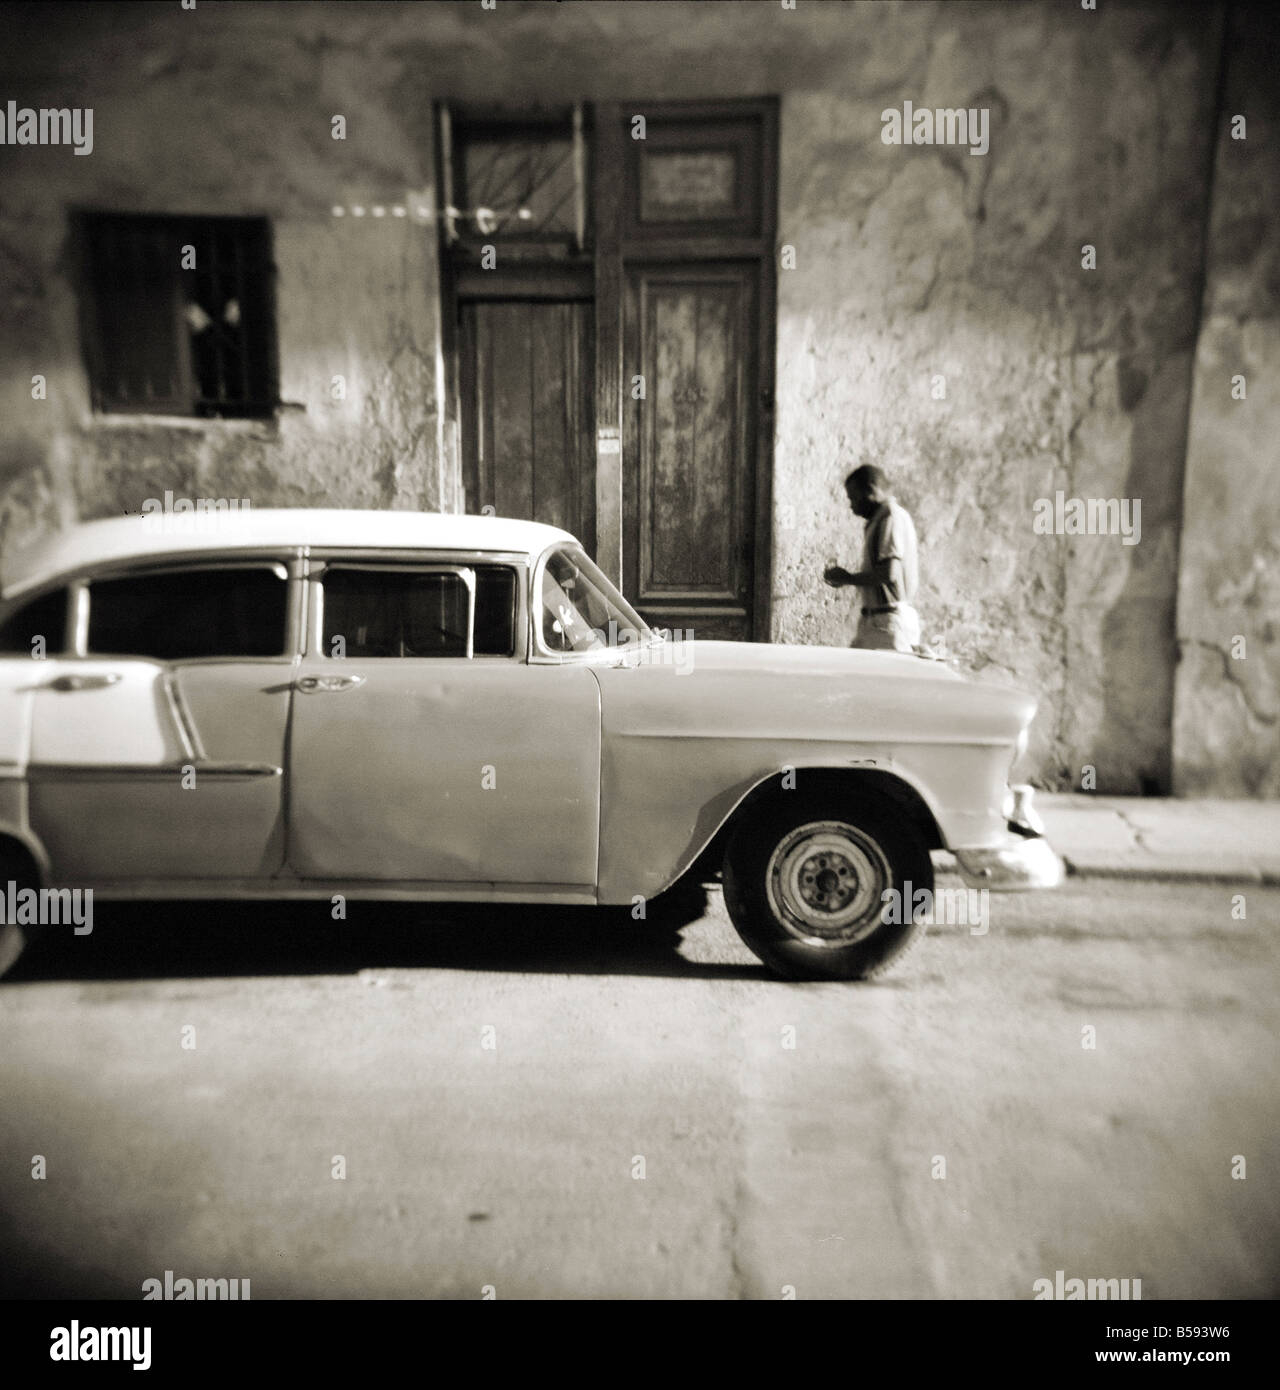 Bild aufgenommen mit einer Holga Mittelformat 120 Film Spielzeugkamera der Mann zu Fuß vorbei an alten amerikanischen Auto, Havanna, Kuba, Westindische Inseln Stockfoto